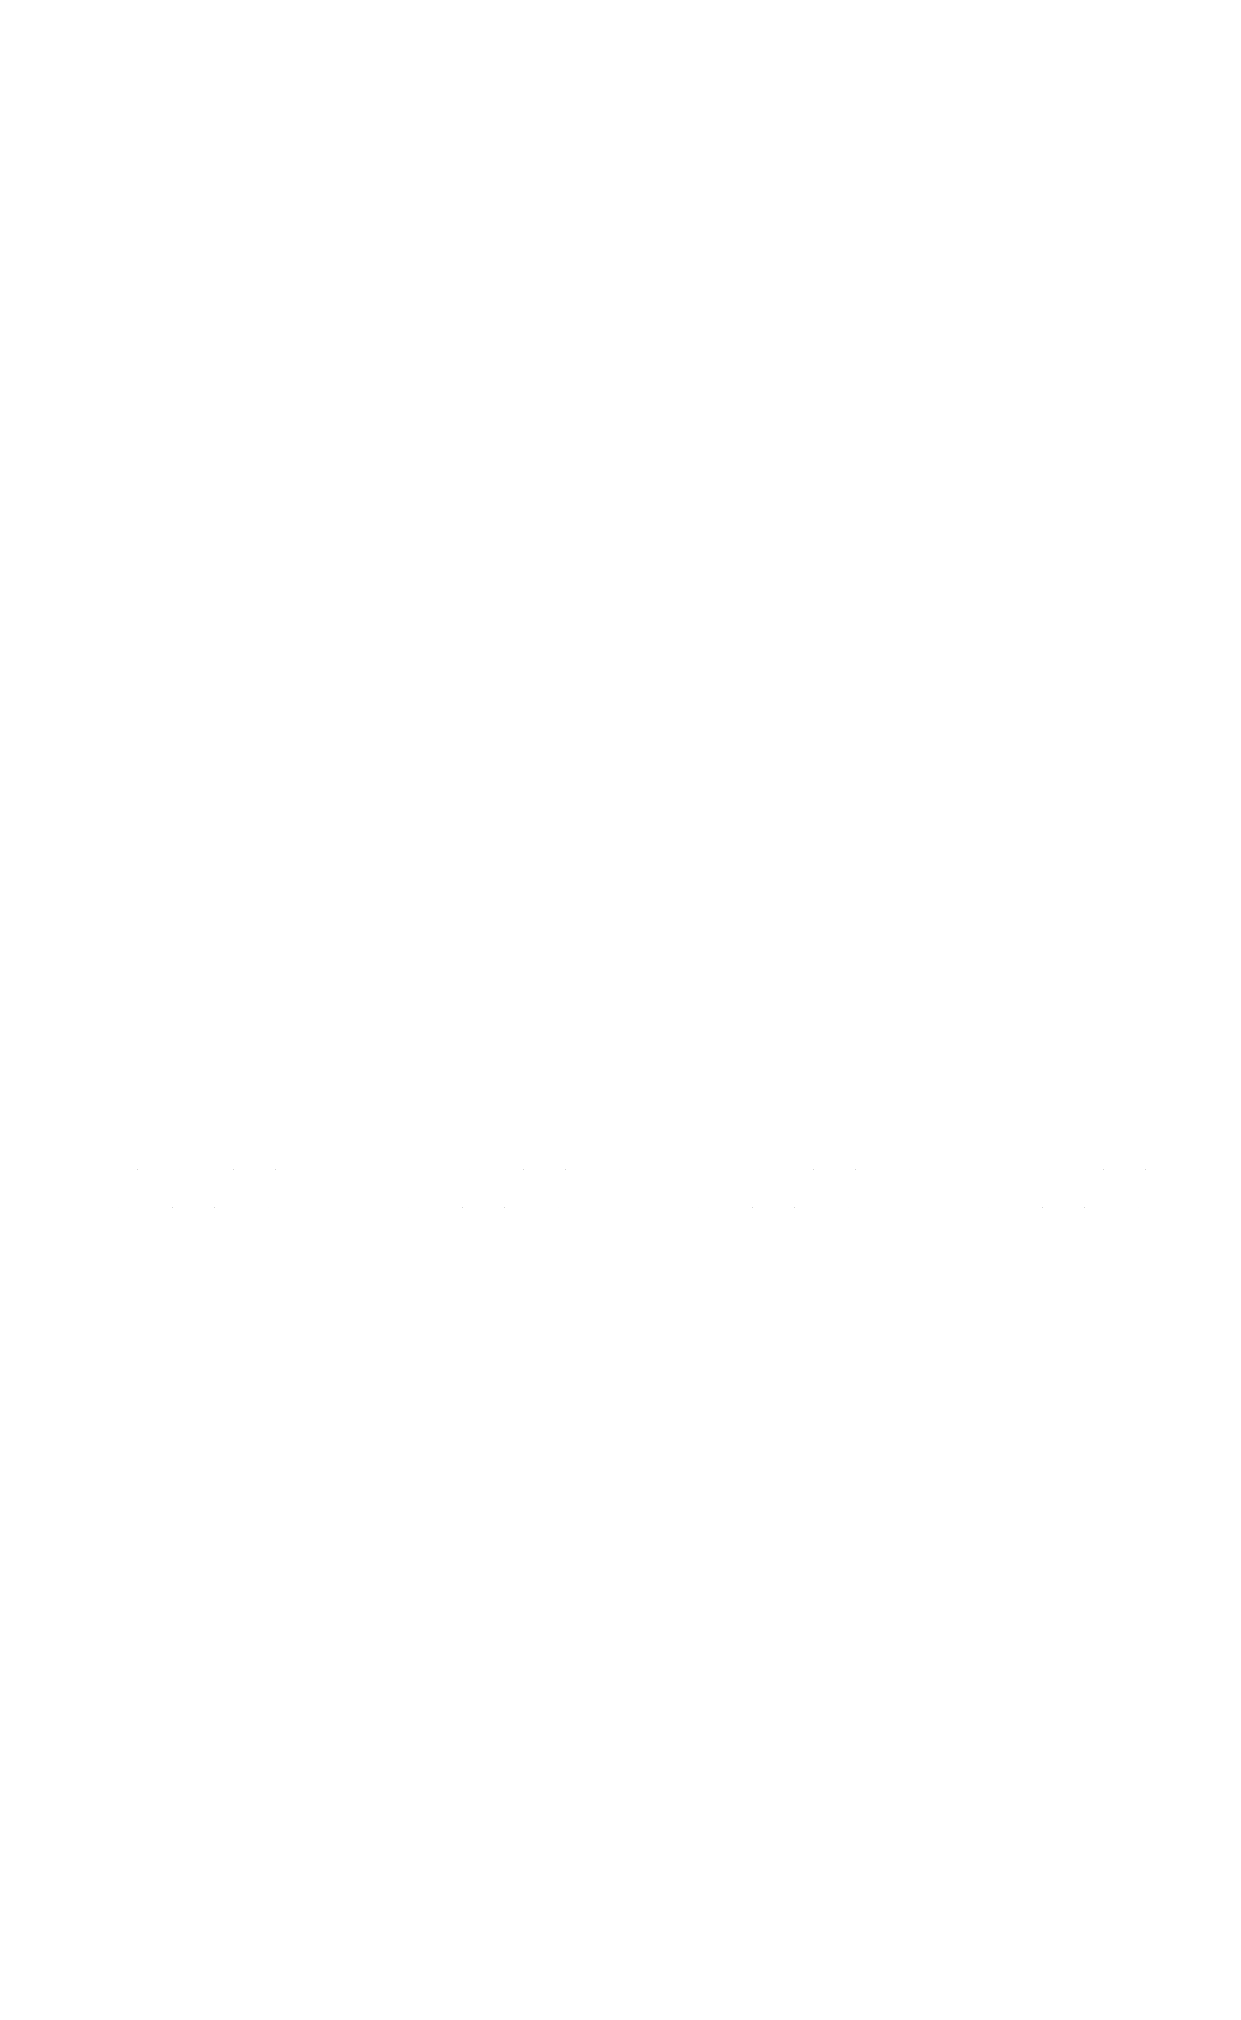 Museo Diocesano de Jaca